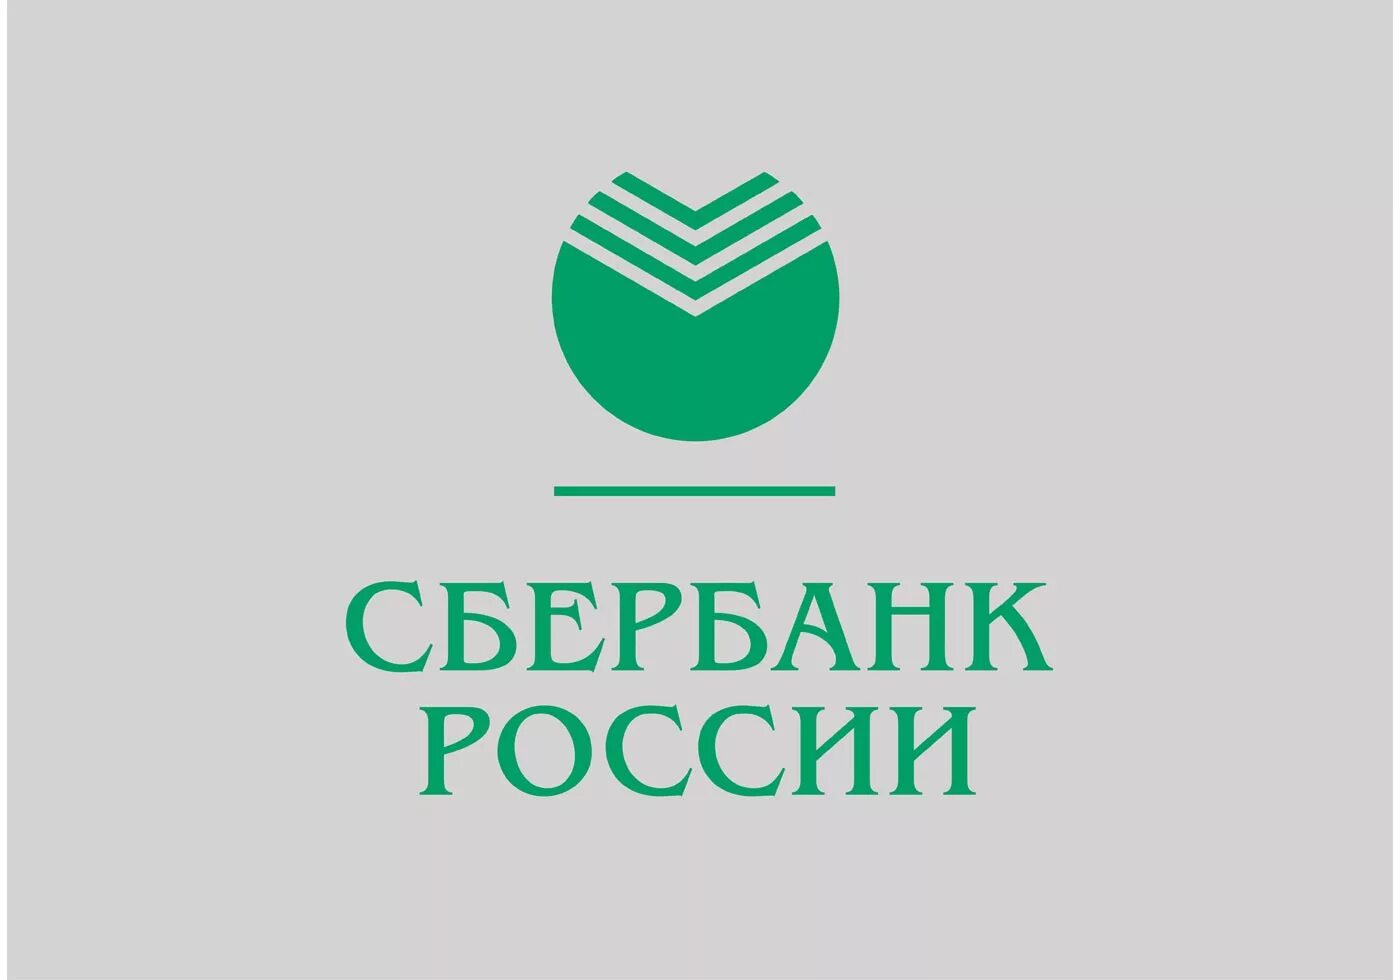 Логотип Сбербанка 1841. Сбербанк России основан в 1841 году. Логотип Сбербанк России 1991-1994. Сбербанк России основан в 1841 году логотип. Сбербанк пд